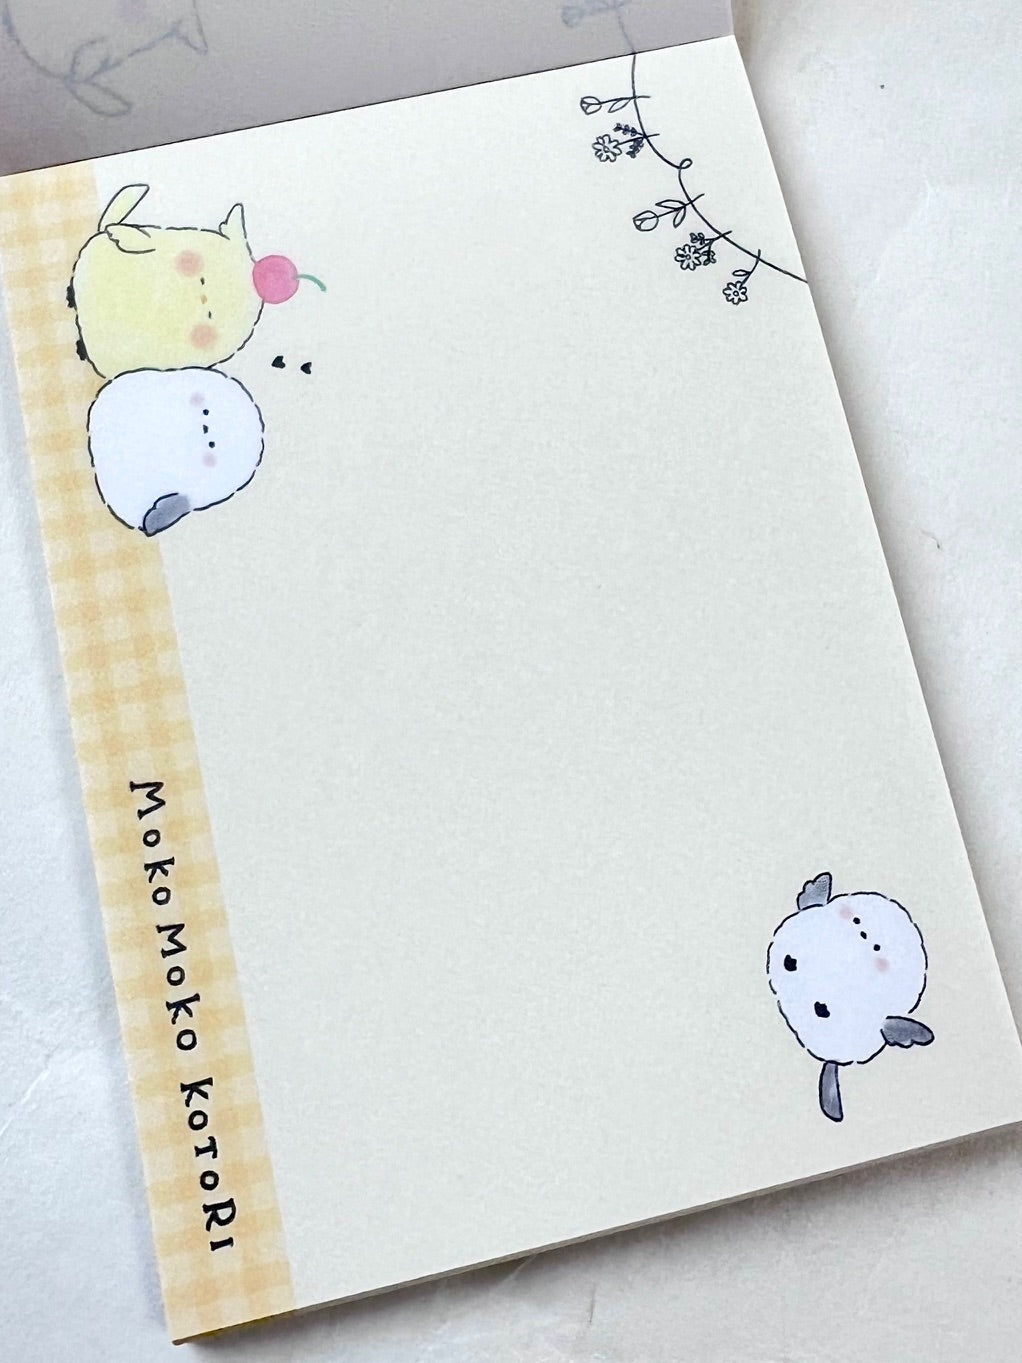 113702 Little Birds Mokoko Kotori Mini Notepad-10